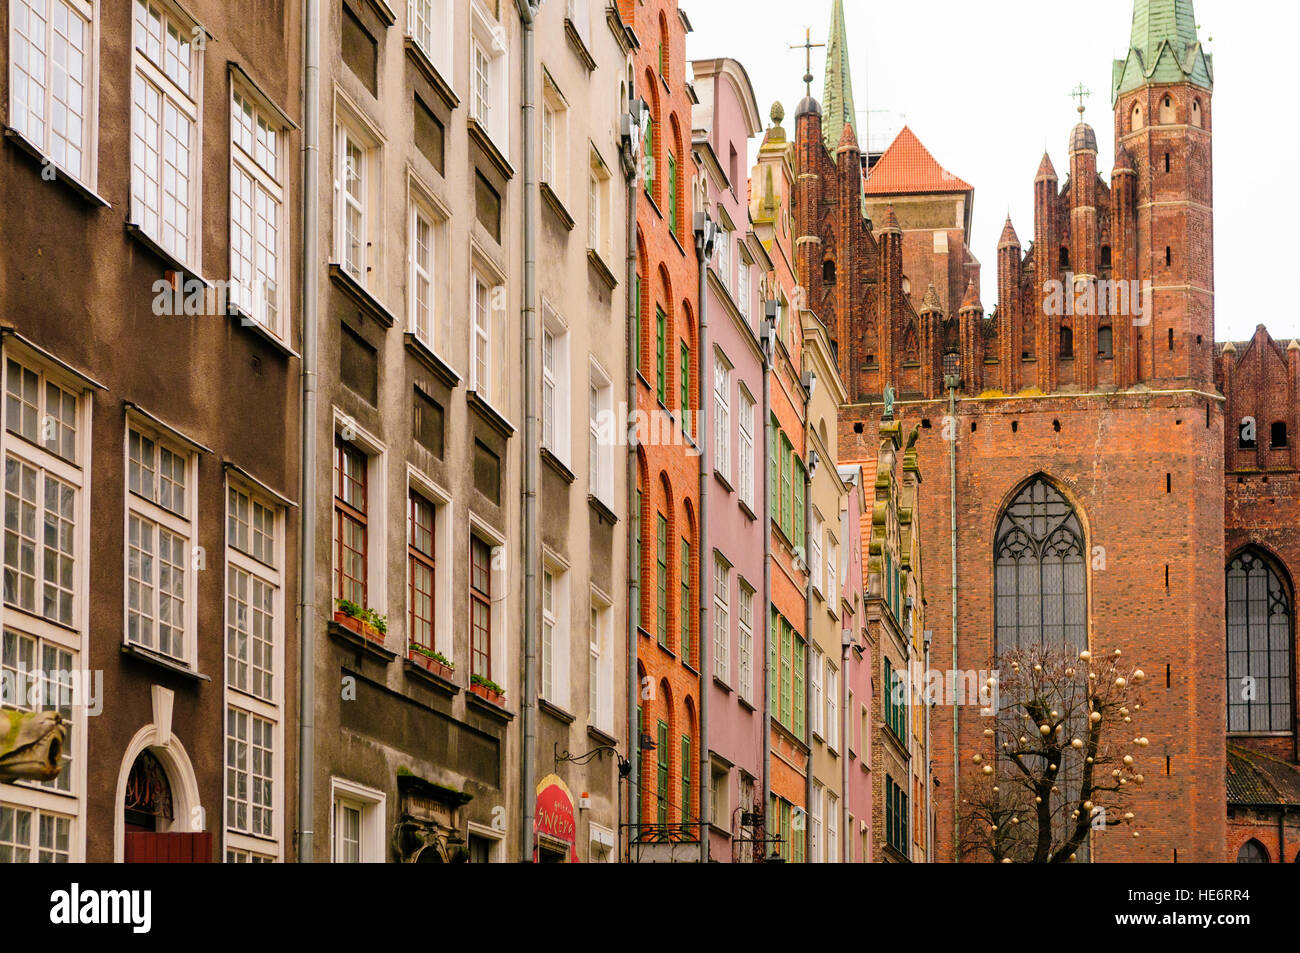 Ornate buildings in Gdansk Stock Photo